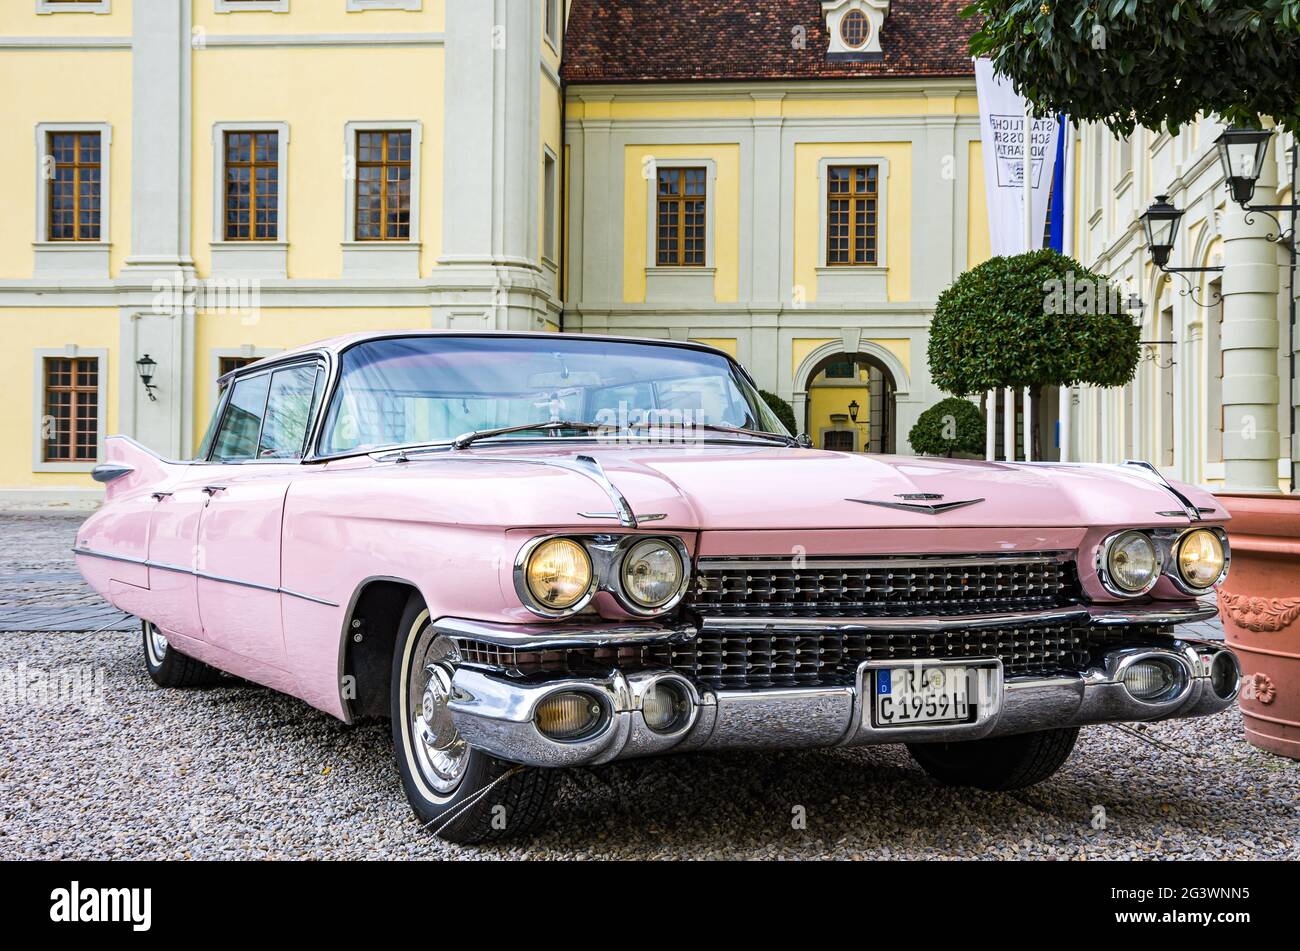 Auto classica americana, una Cadillac Sedan de Ville nel cortile interno del palazzo residenziale barocco di Ludwigsburg, Baden-Württemberg, Germania. Foto Stock